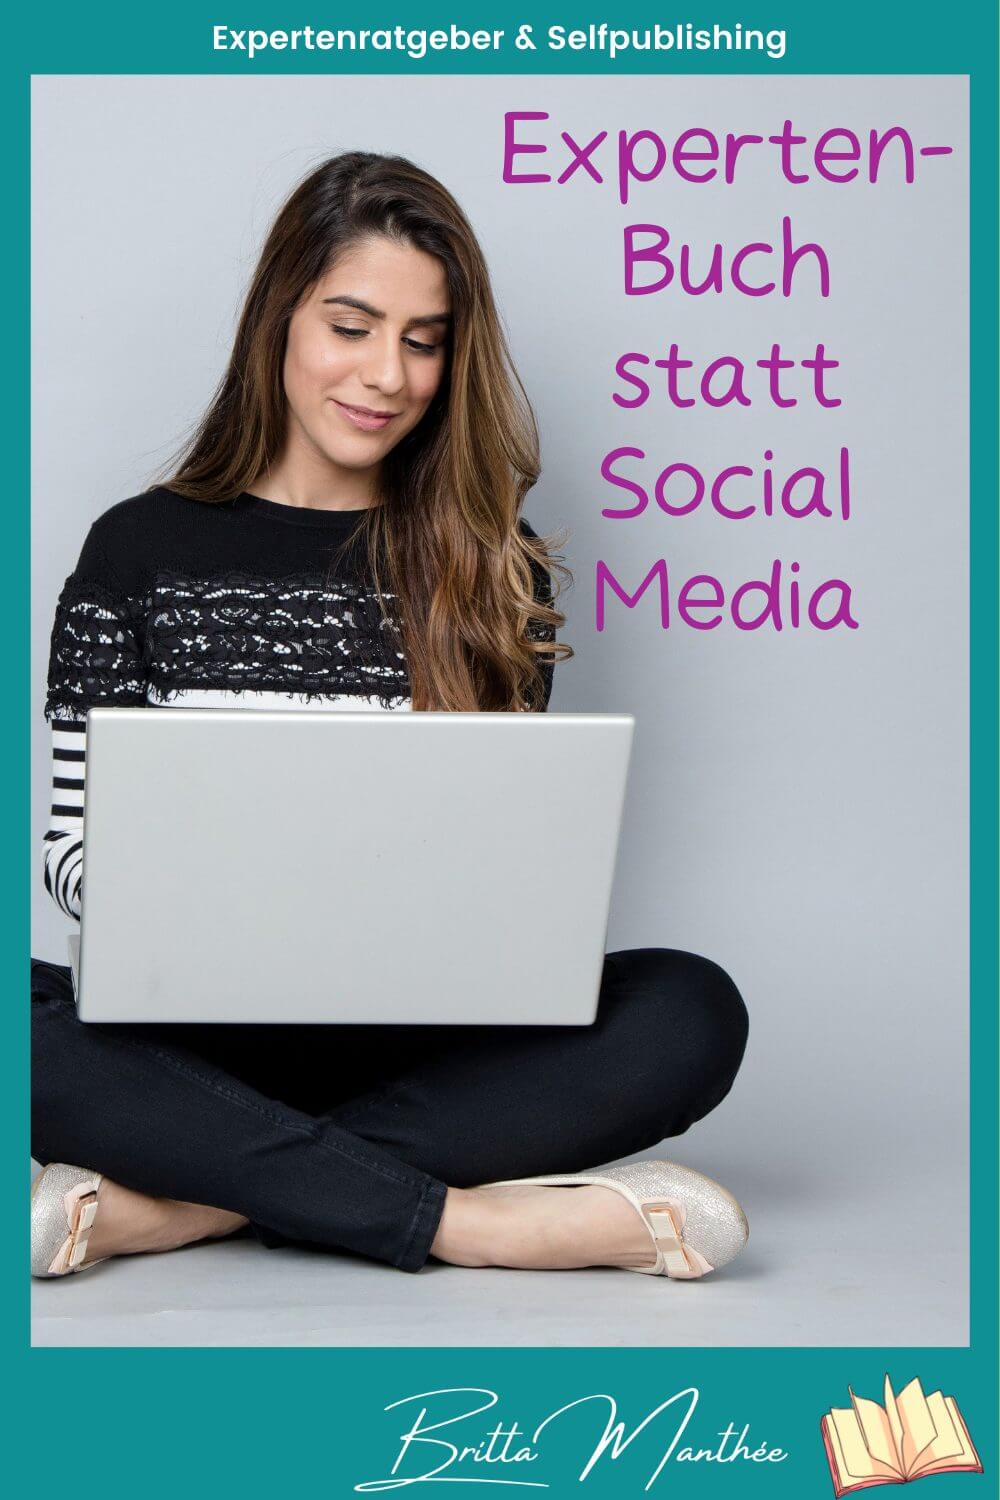 Blog Pin Britta Manthee Buch statt Social Media